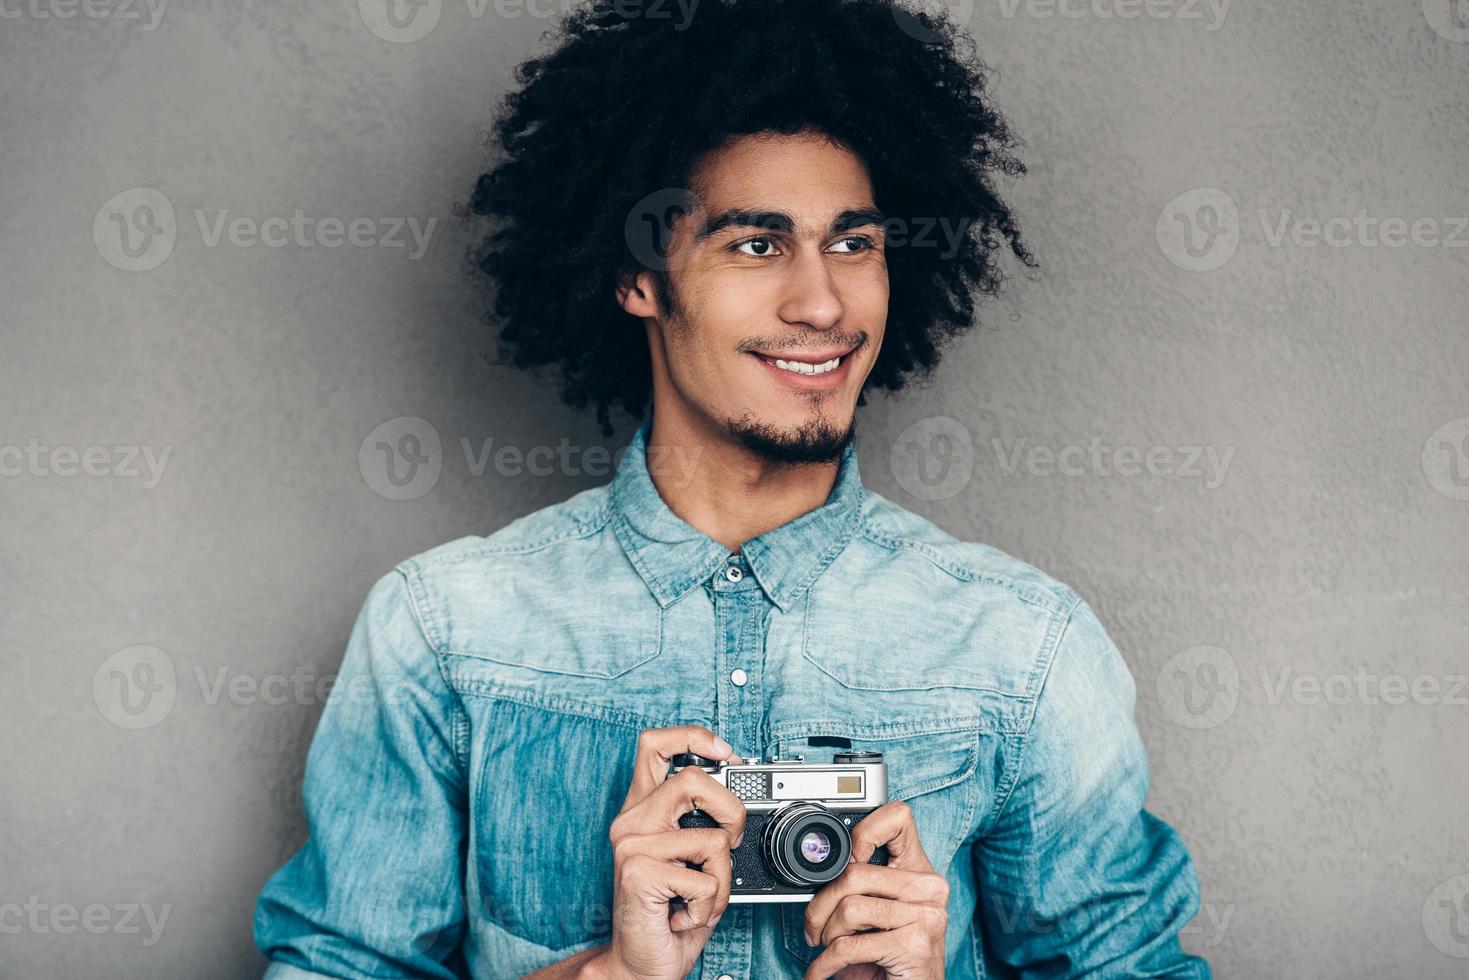 fotógrafo moderno. un apuesto joven africano sosteniendo una cámara de estilo retro y mirando hacia otro lado con una sonrisa mientras se enfrenta a un fondo gris foto